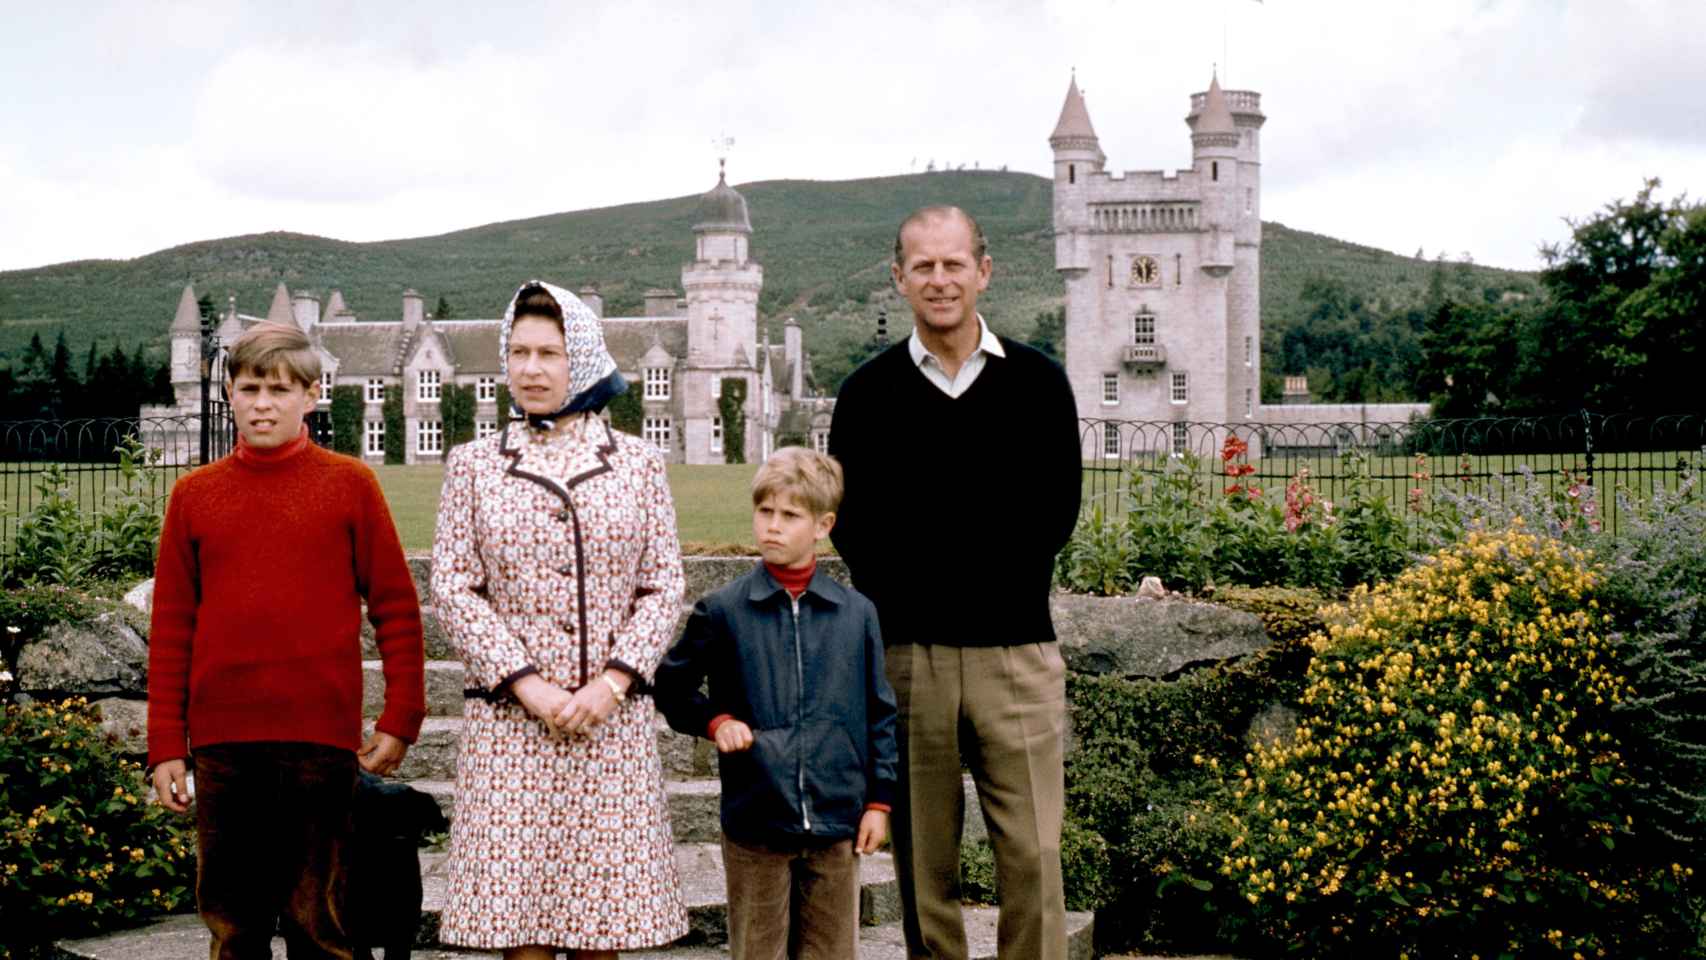 La Reina junto a su difunto marido y sus hijos posando con el castillo de fondo en una imagen tomada en 1972.